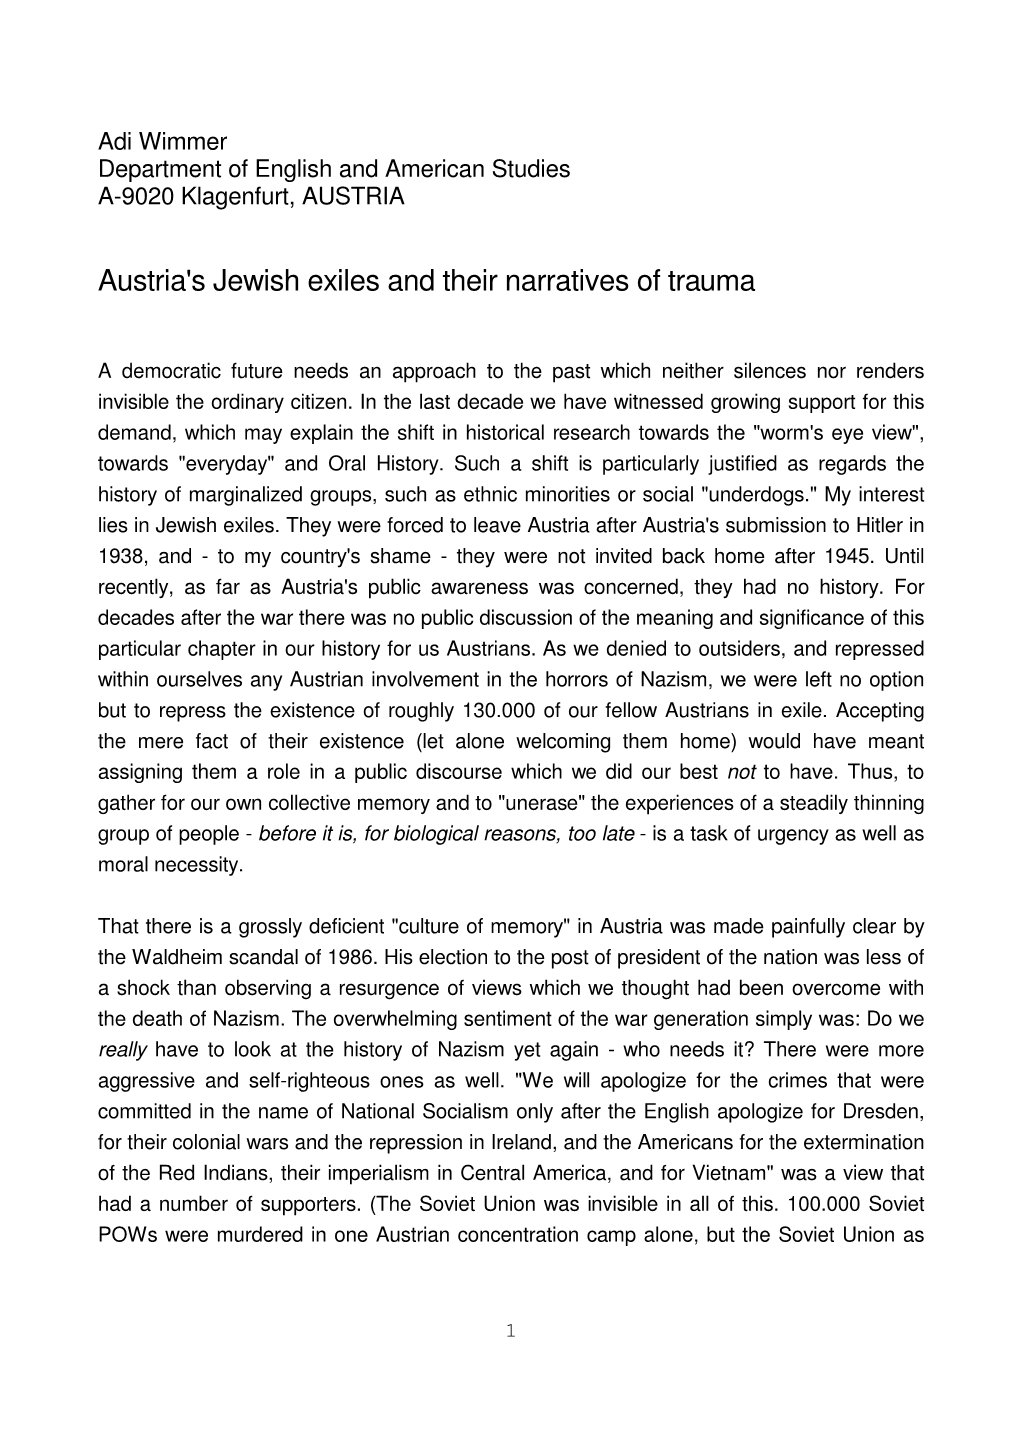 Austria's Jewish Exiles and Their Narratives of Trauma